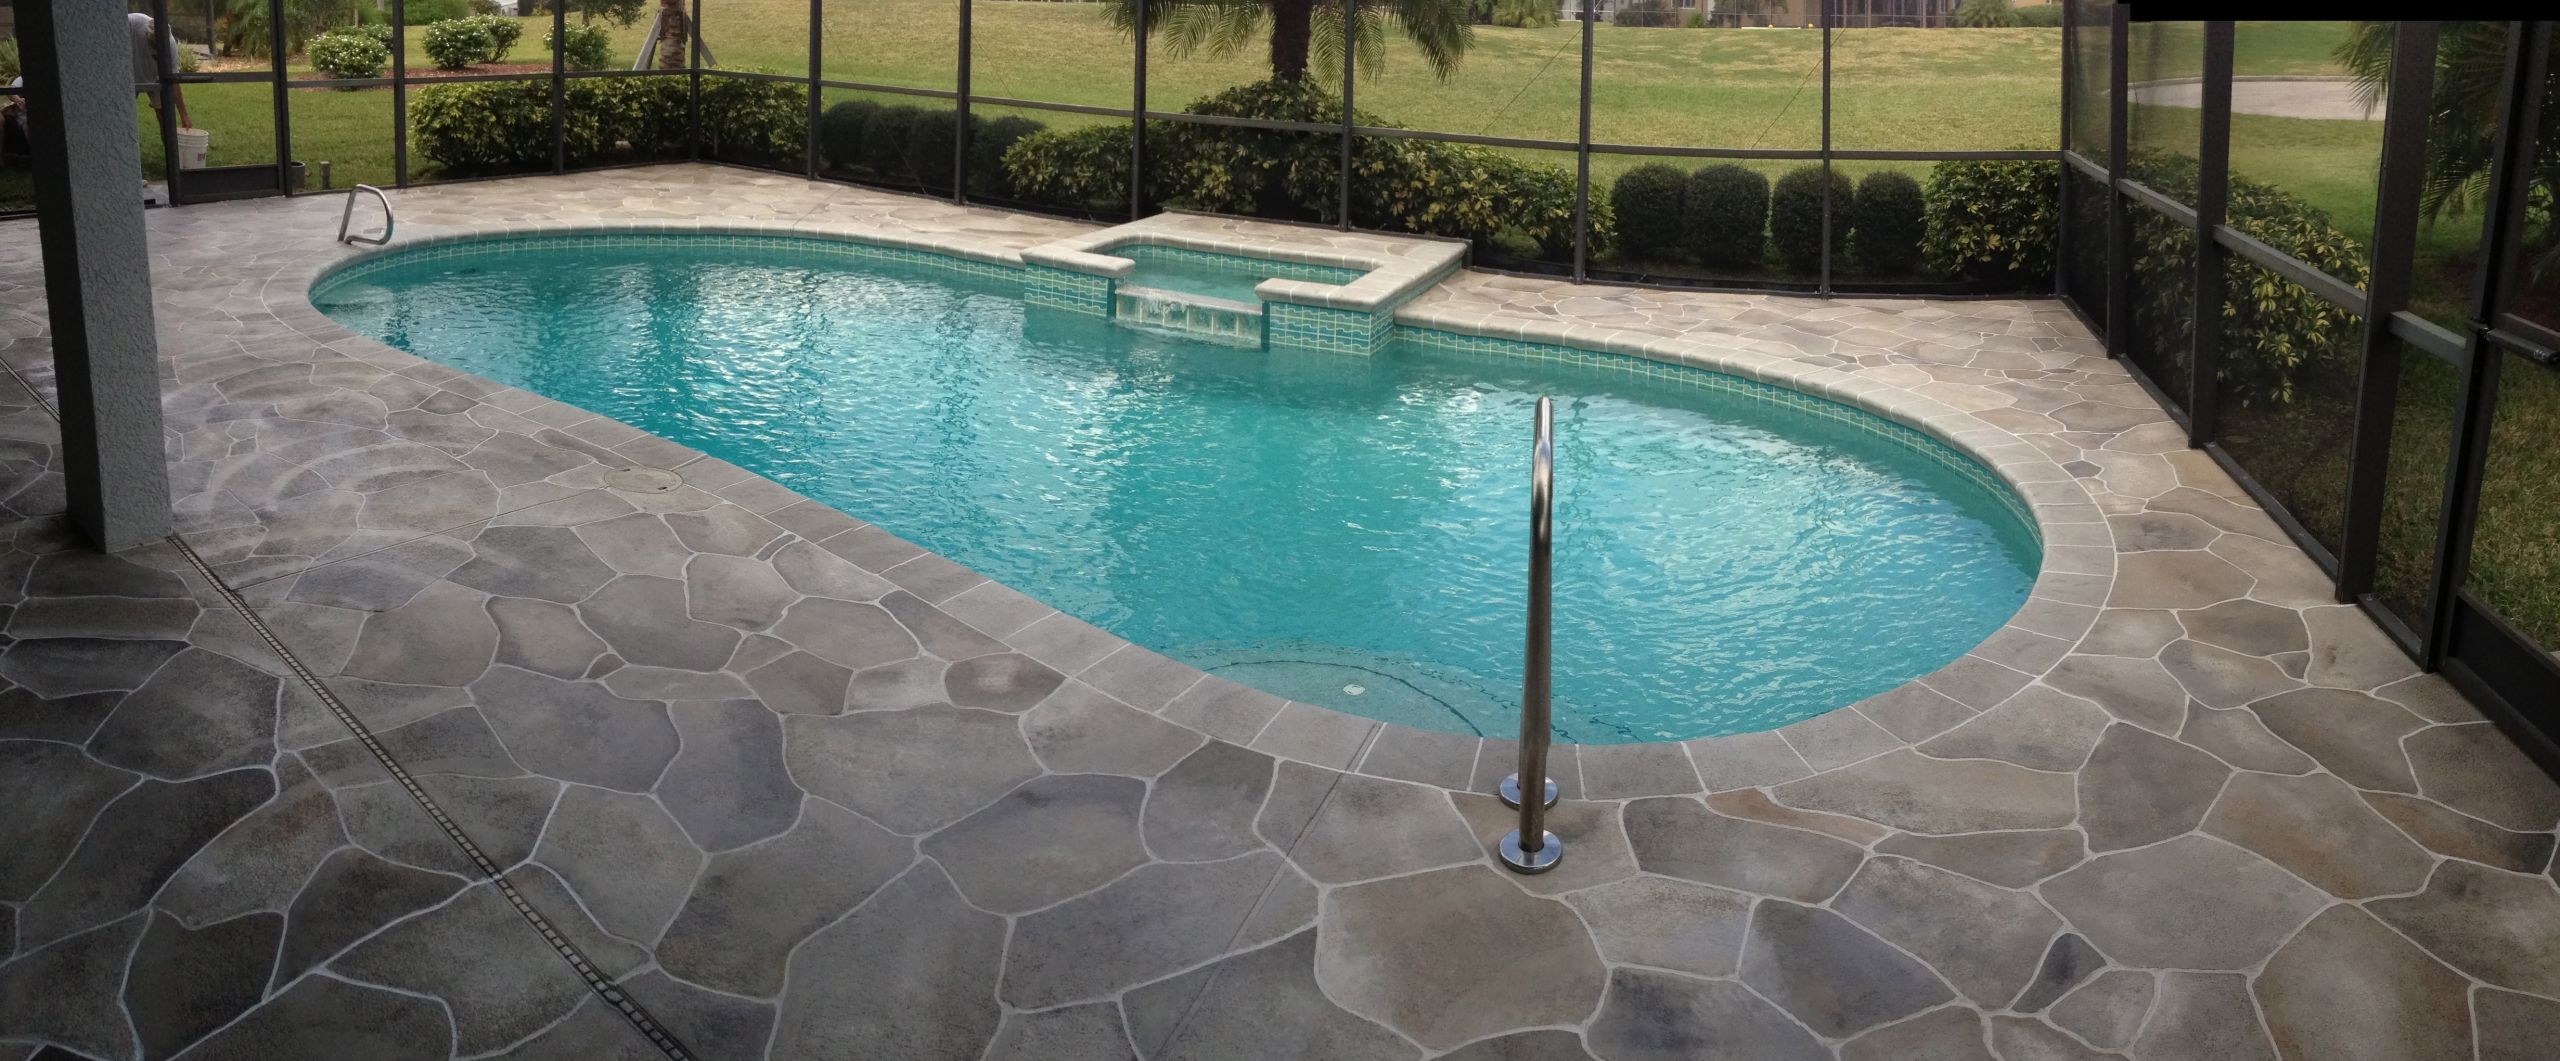 Concrete Pool Deck Painting
 Concrete Designs Florida